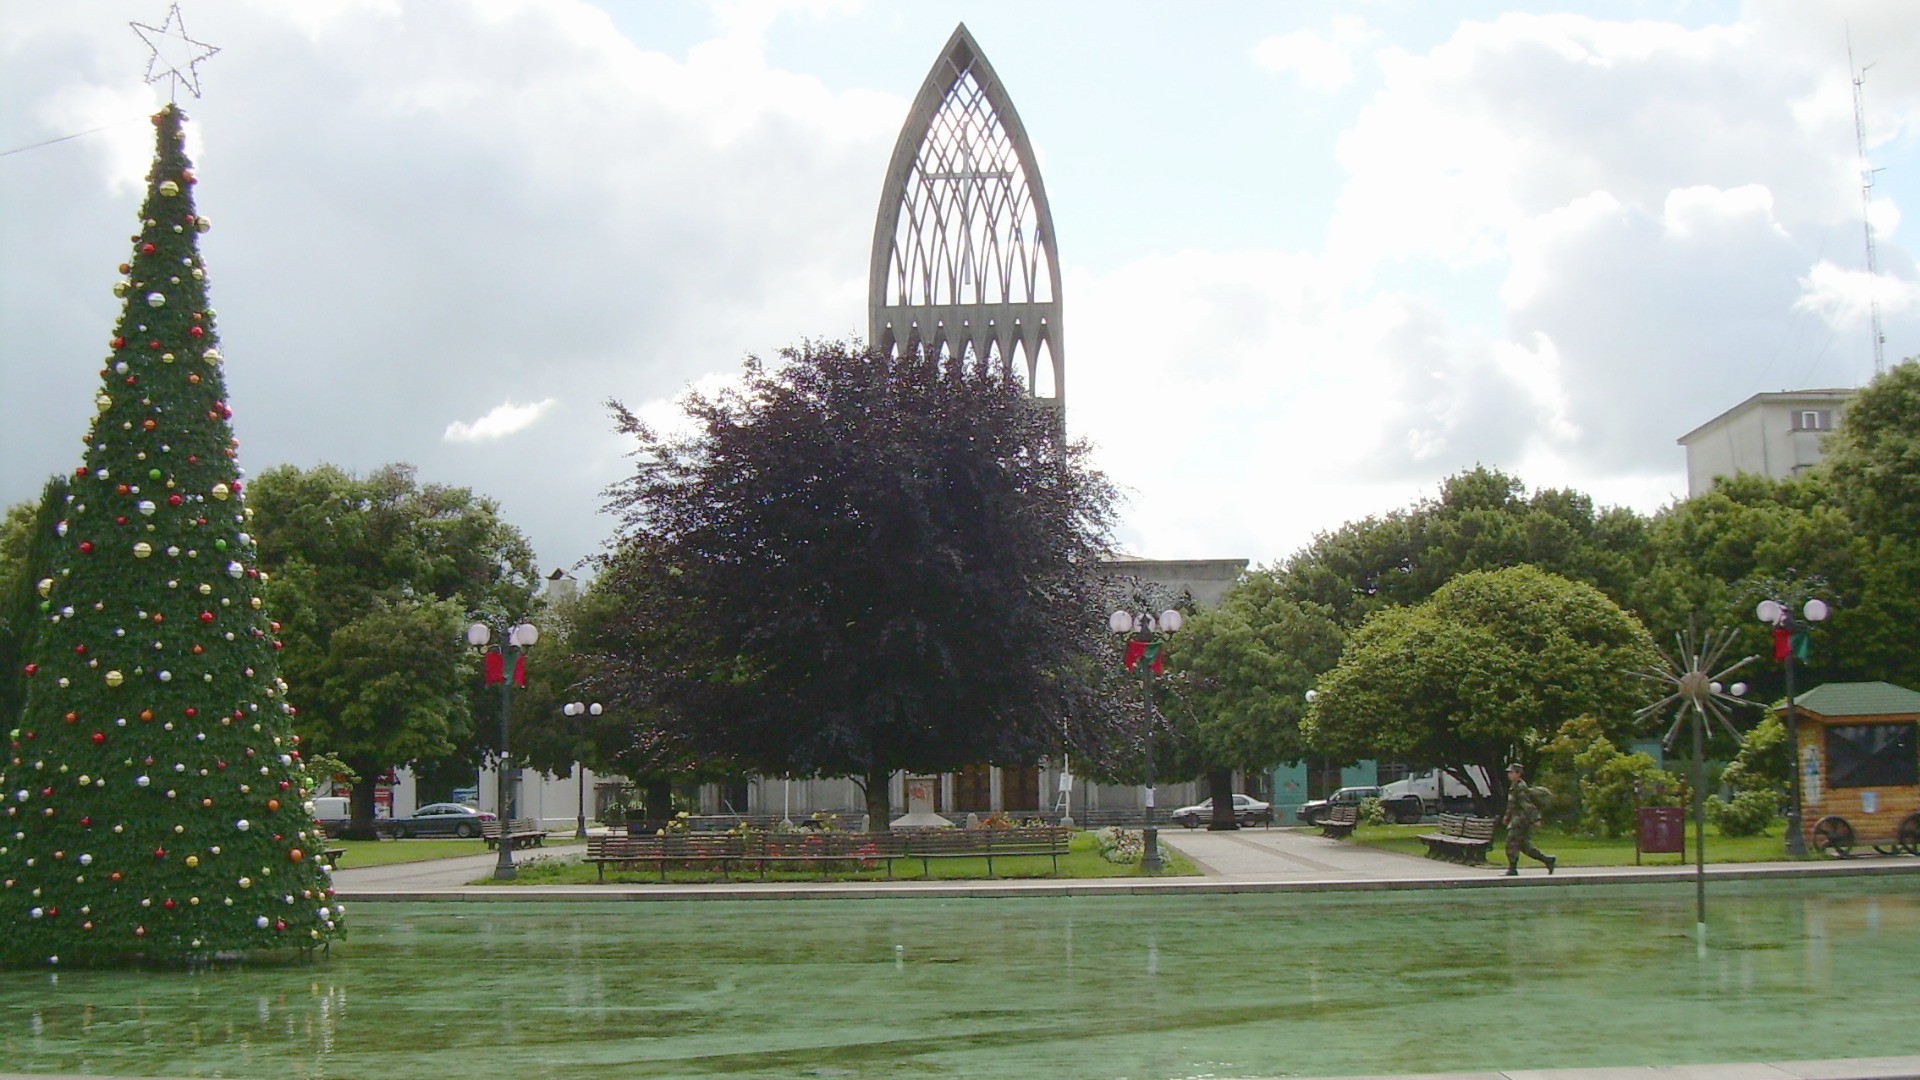 La Plaza de Armas et la Cathédrale d'Osorno au Chili (Image: commons wikimedia / CC BY-SA 3.0 / Manuel Cossu)